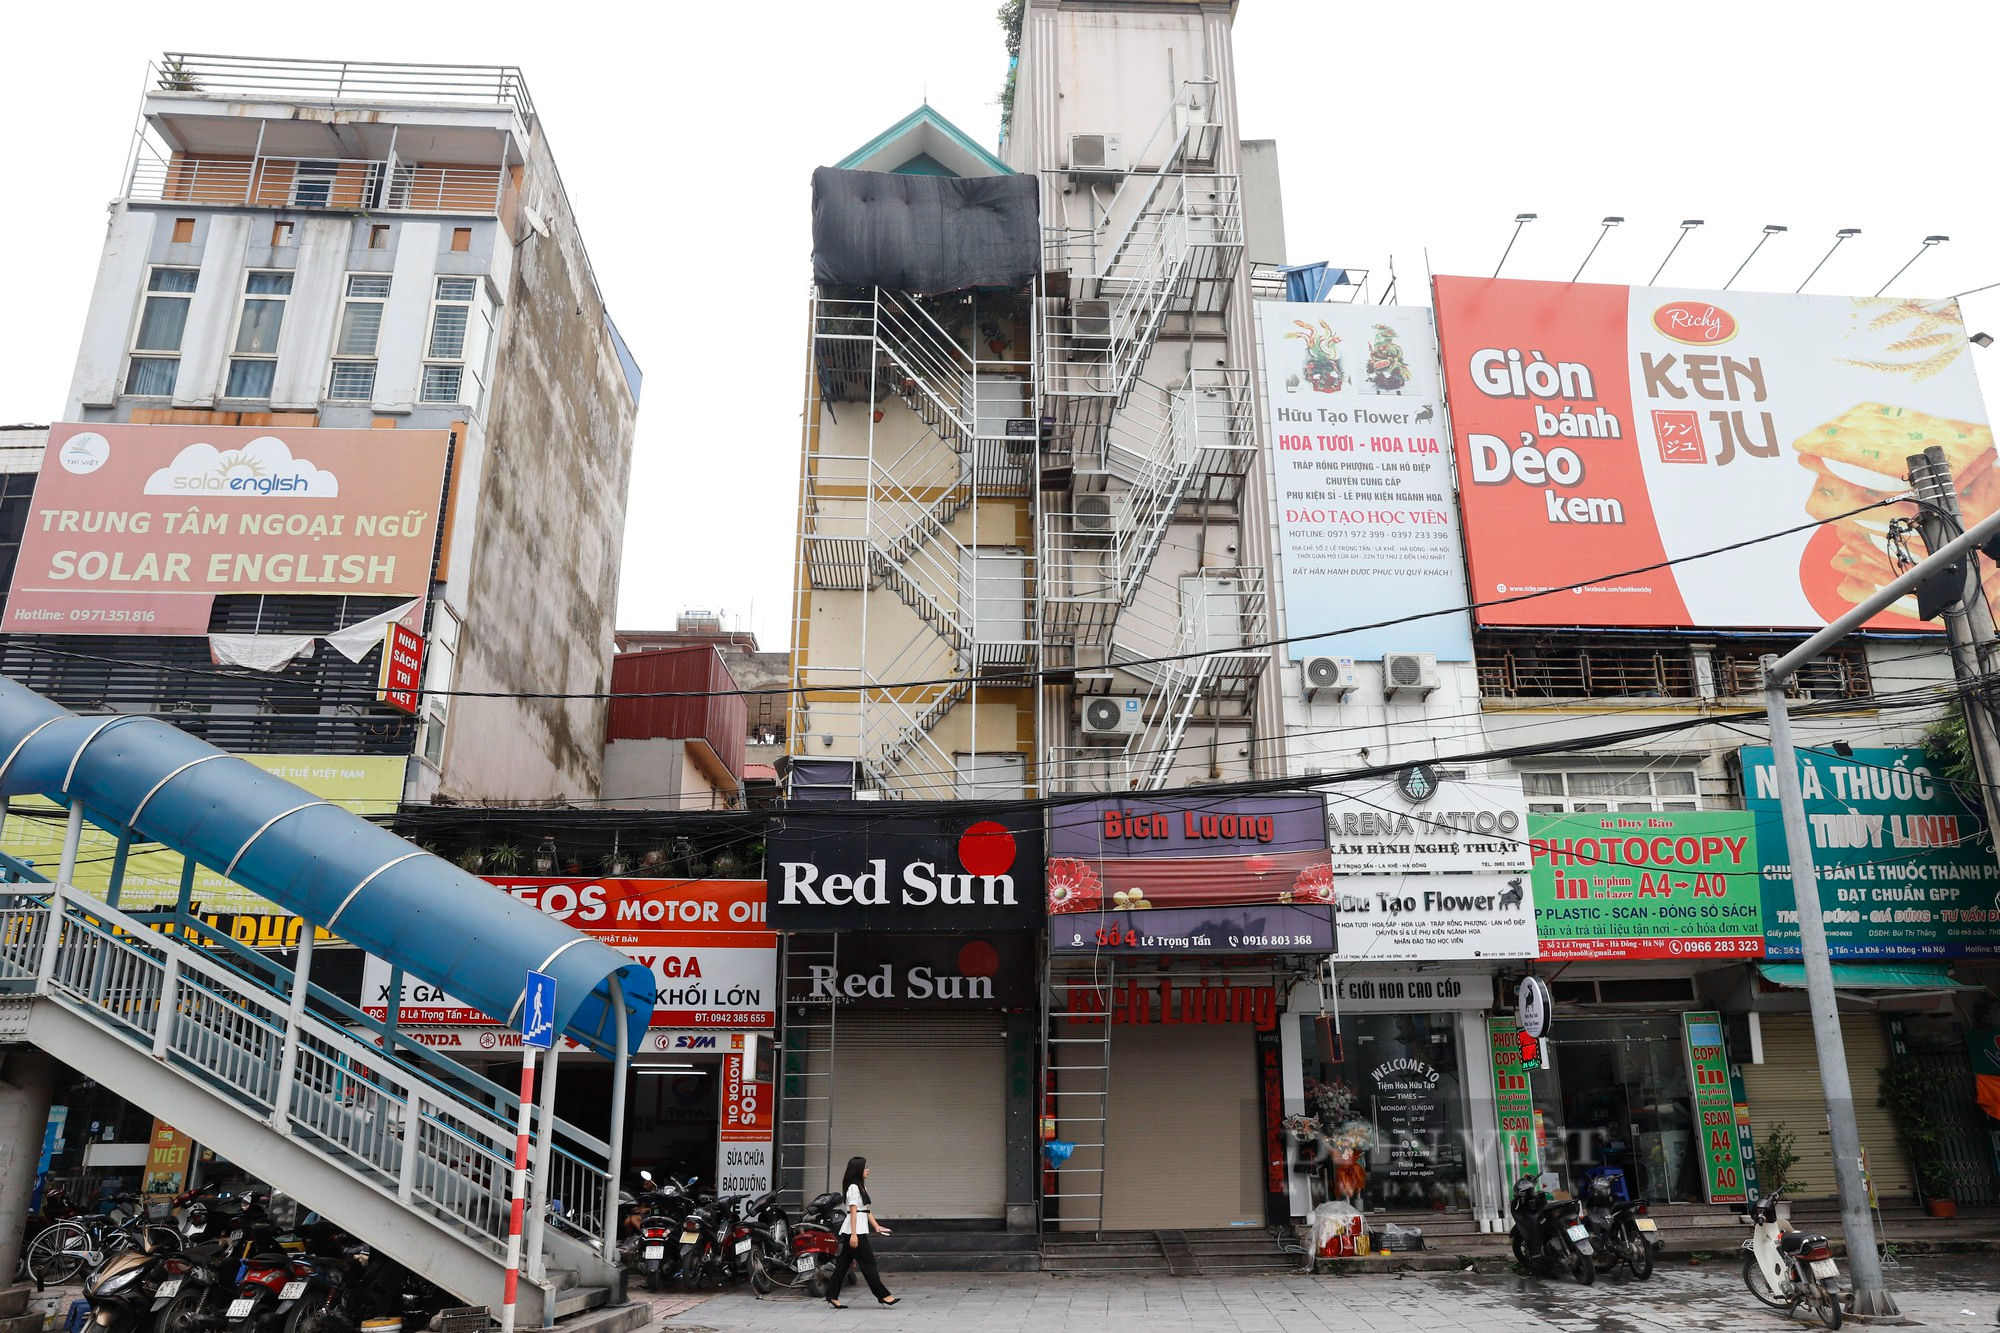 Chung cư mini, khách sạn tại Hà Nội lắp thang thoát hiểm hàng trăm triệu đồng - Ảnh 1.